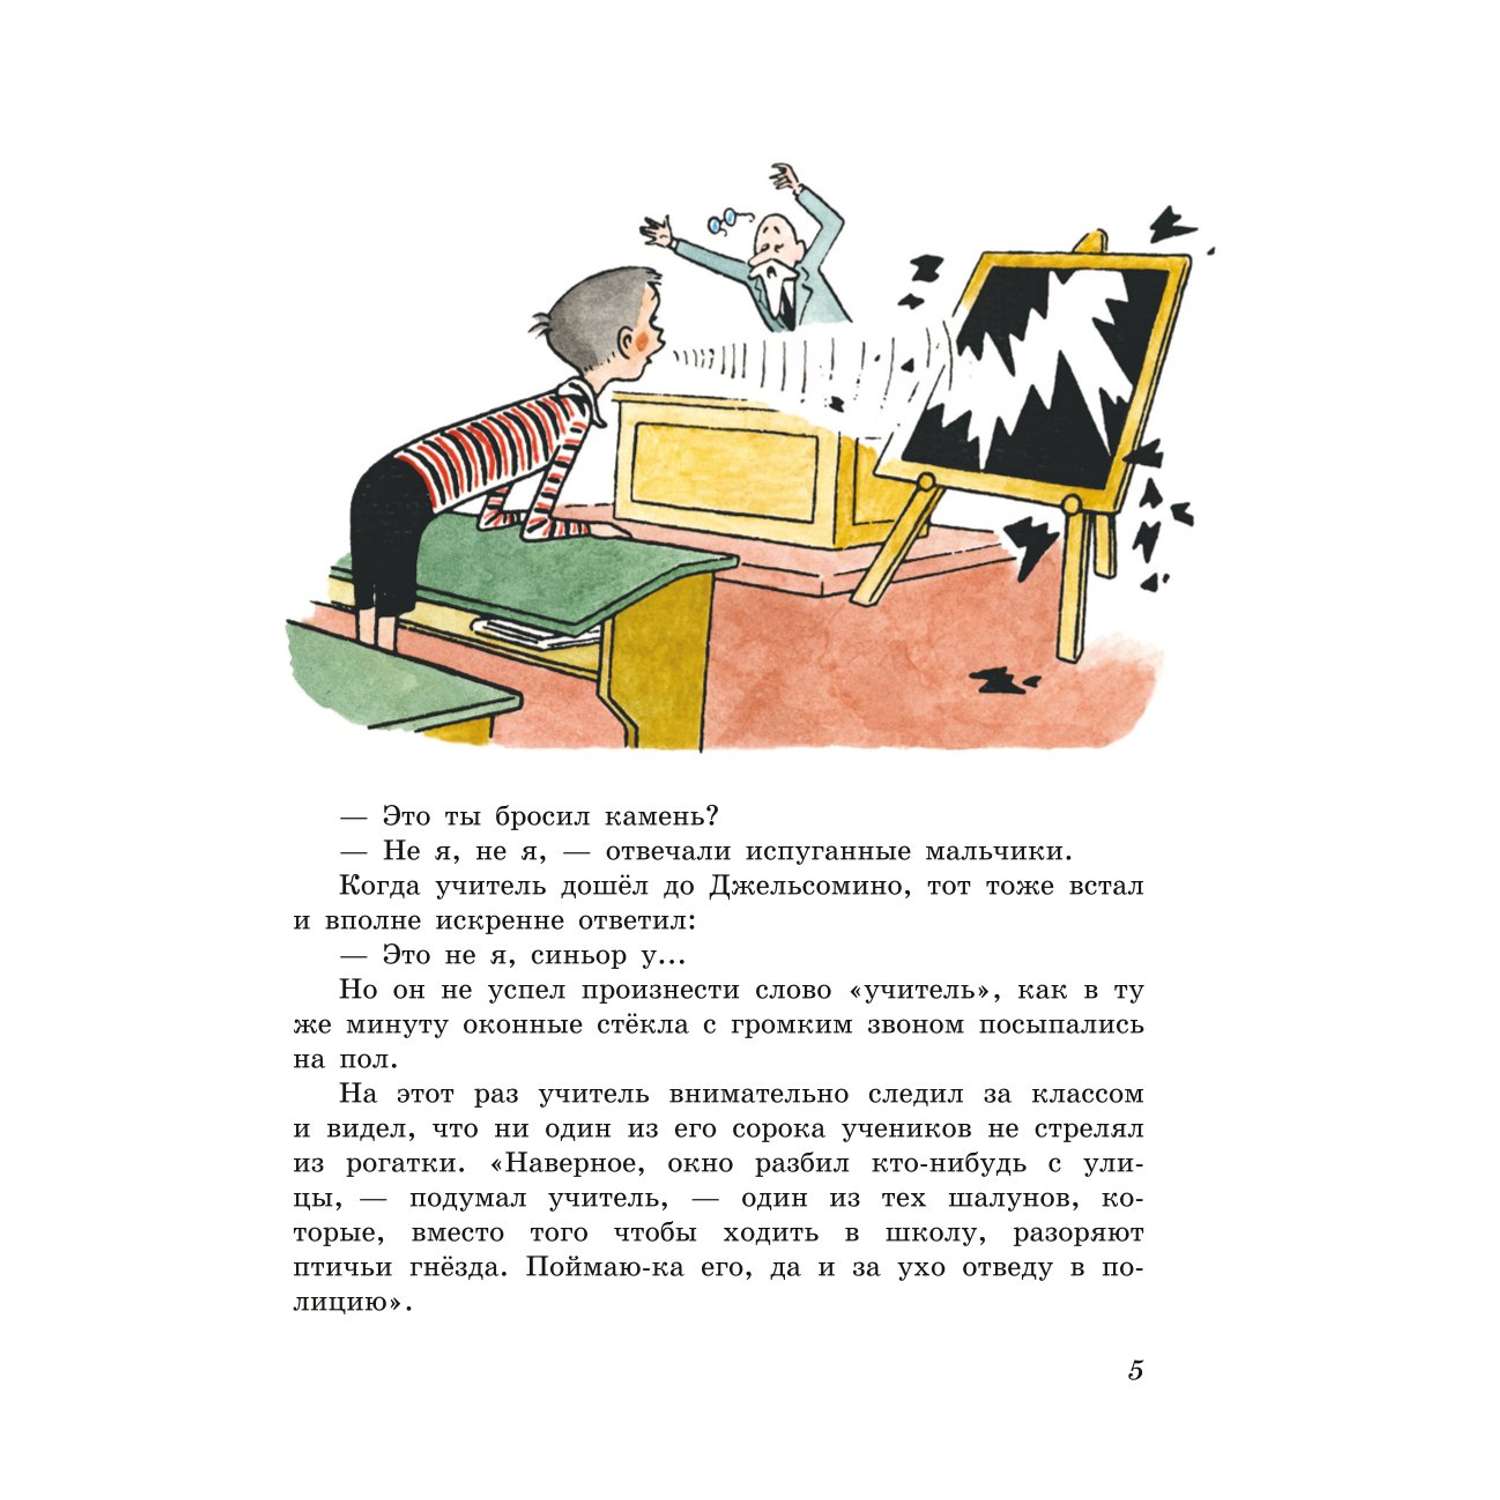 Книга Эксмо Джельсомино в Стране лжецов иллюстрации Вердини перевод Махова - фото 4